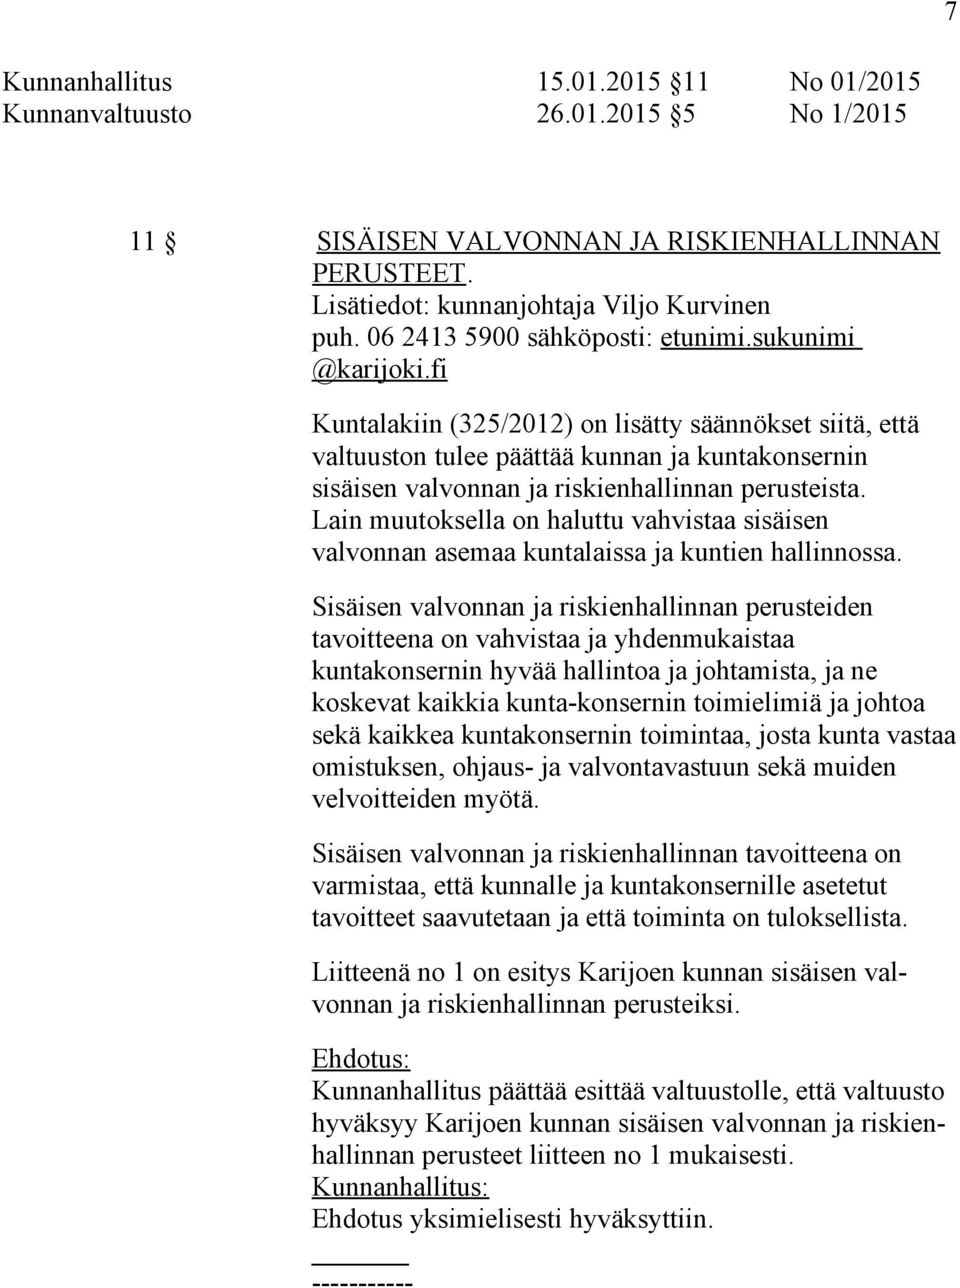 fi Kuntalakiin (325/2012) on lisätty säännökset siitä, että valtuuston tulee päättää kunnan ja kuntakonsernin sisäisen valvonnan ja riskienhallinnan perusteista.